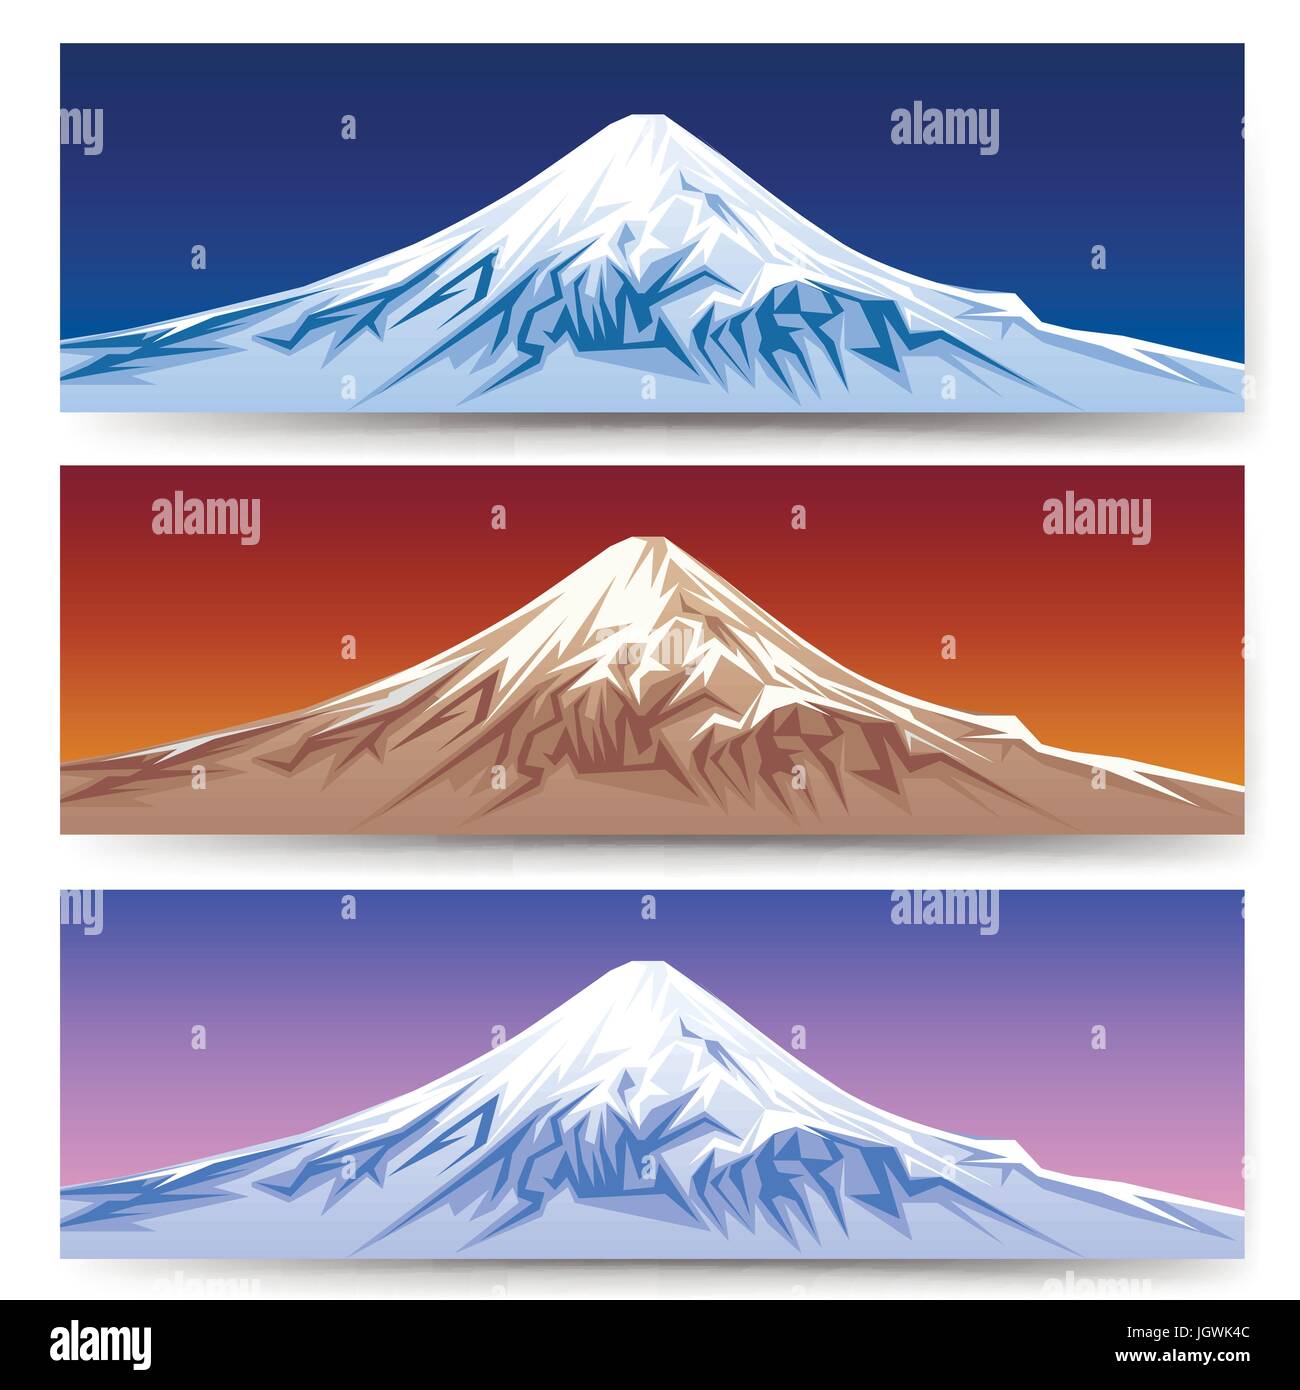 El monte Fuji nevado banners. Japón paisaje panorámico de montaña para diseños de turismo ilustración vectorial Ilustración del Vector